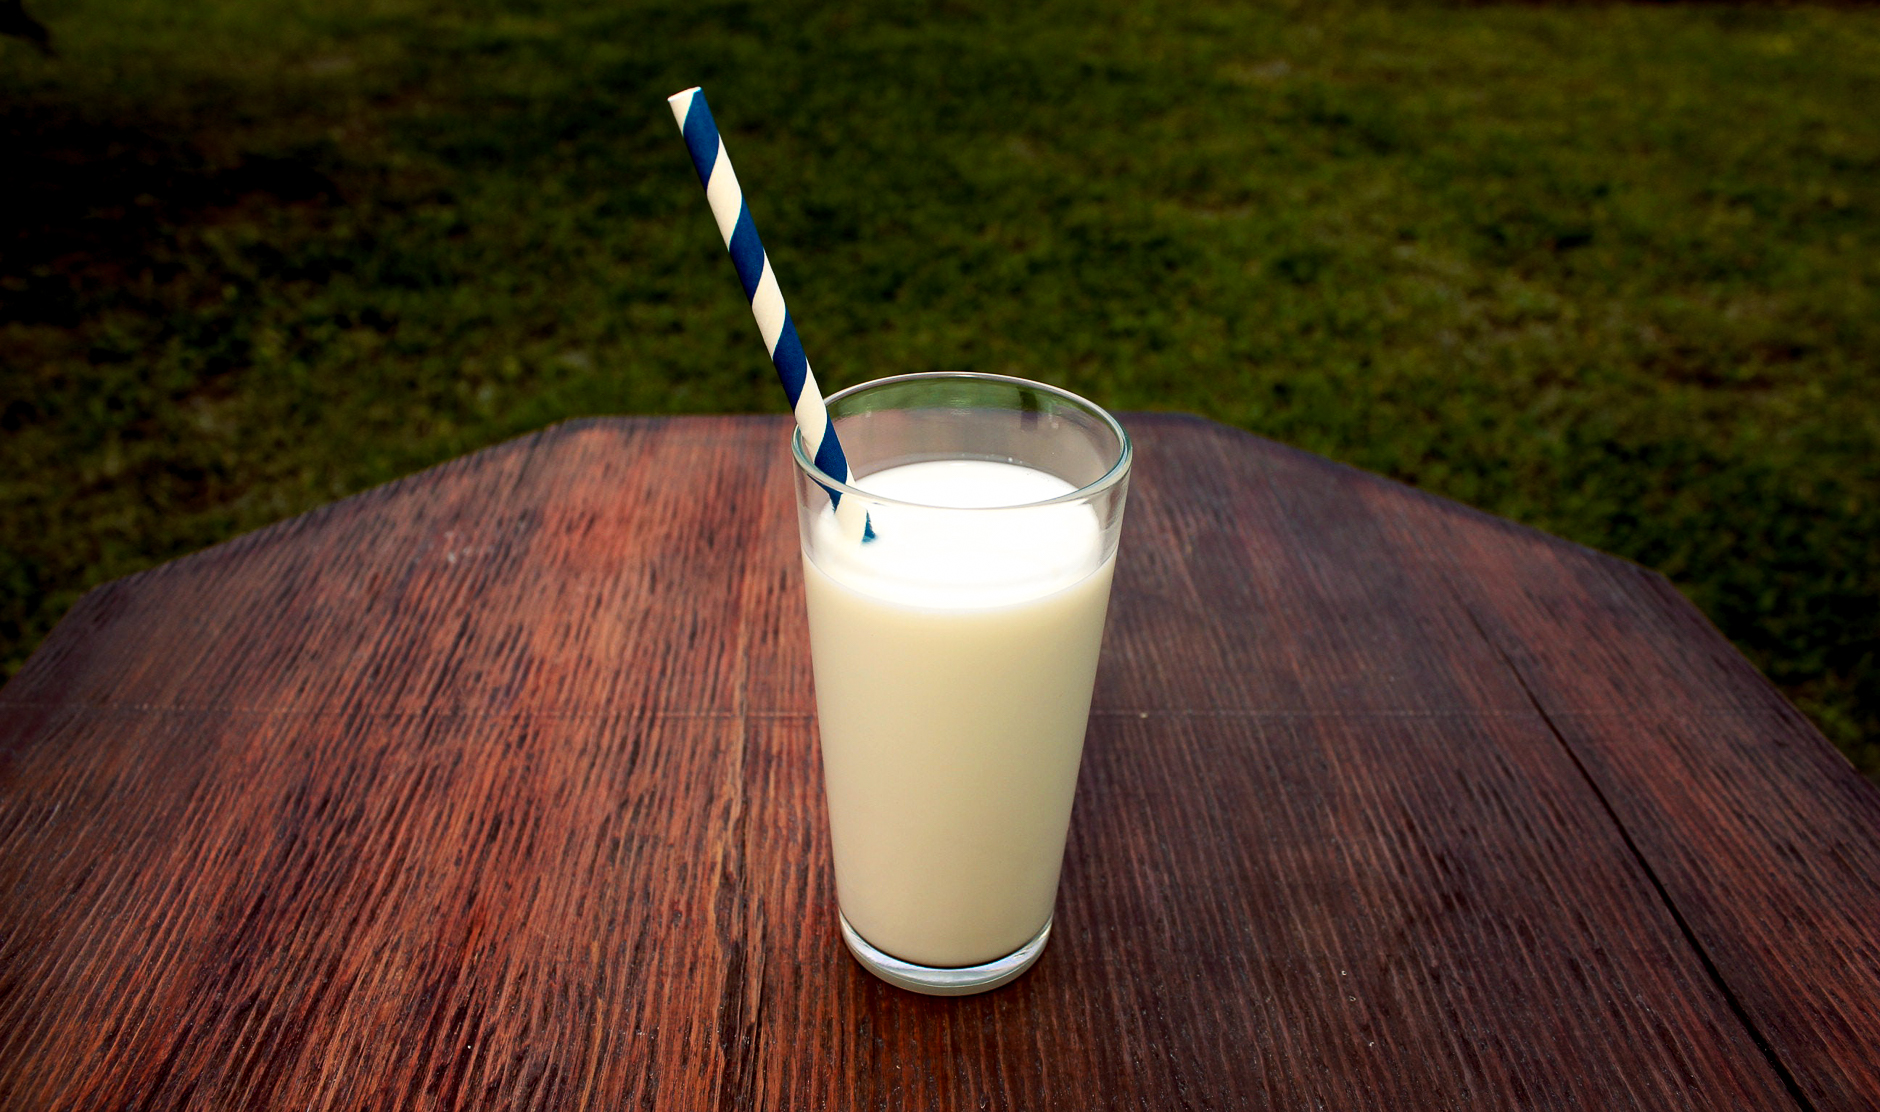 La leche y sus alternativas. ¿Qué es importante saber?